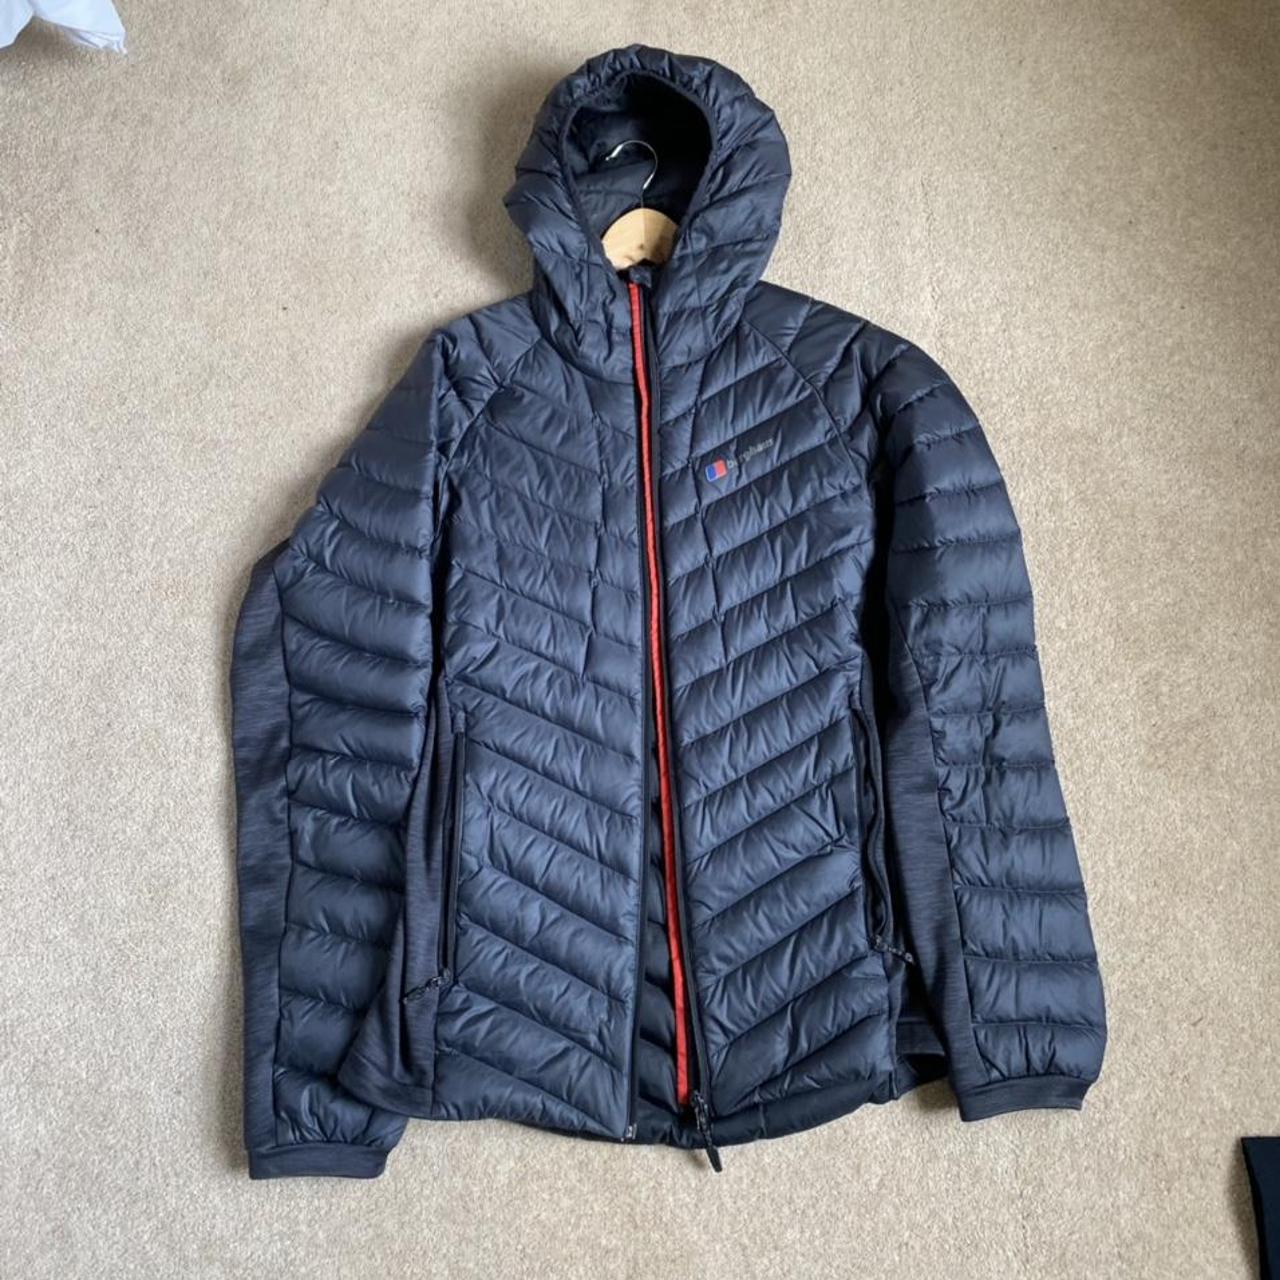 Medium berghaus puffer jacket 10/10 condition no... - Depop